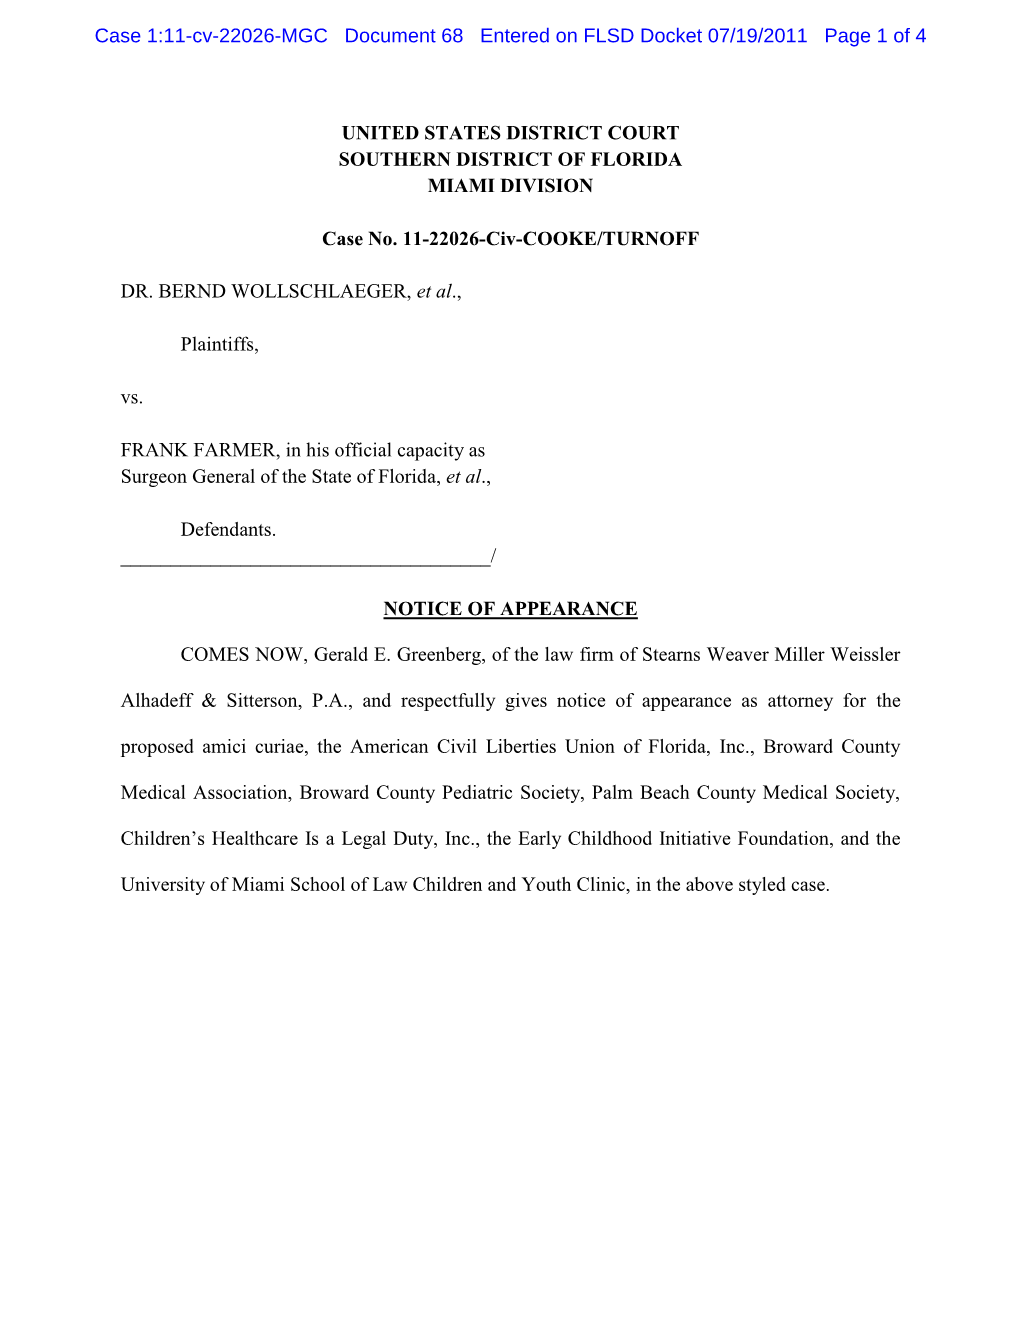 Case 1:11-Cv-22026-MGC Document 68 Entered on FLSD Docket 07/19/2011 Page 1 of 4